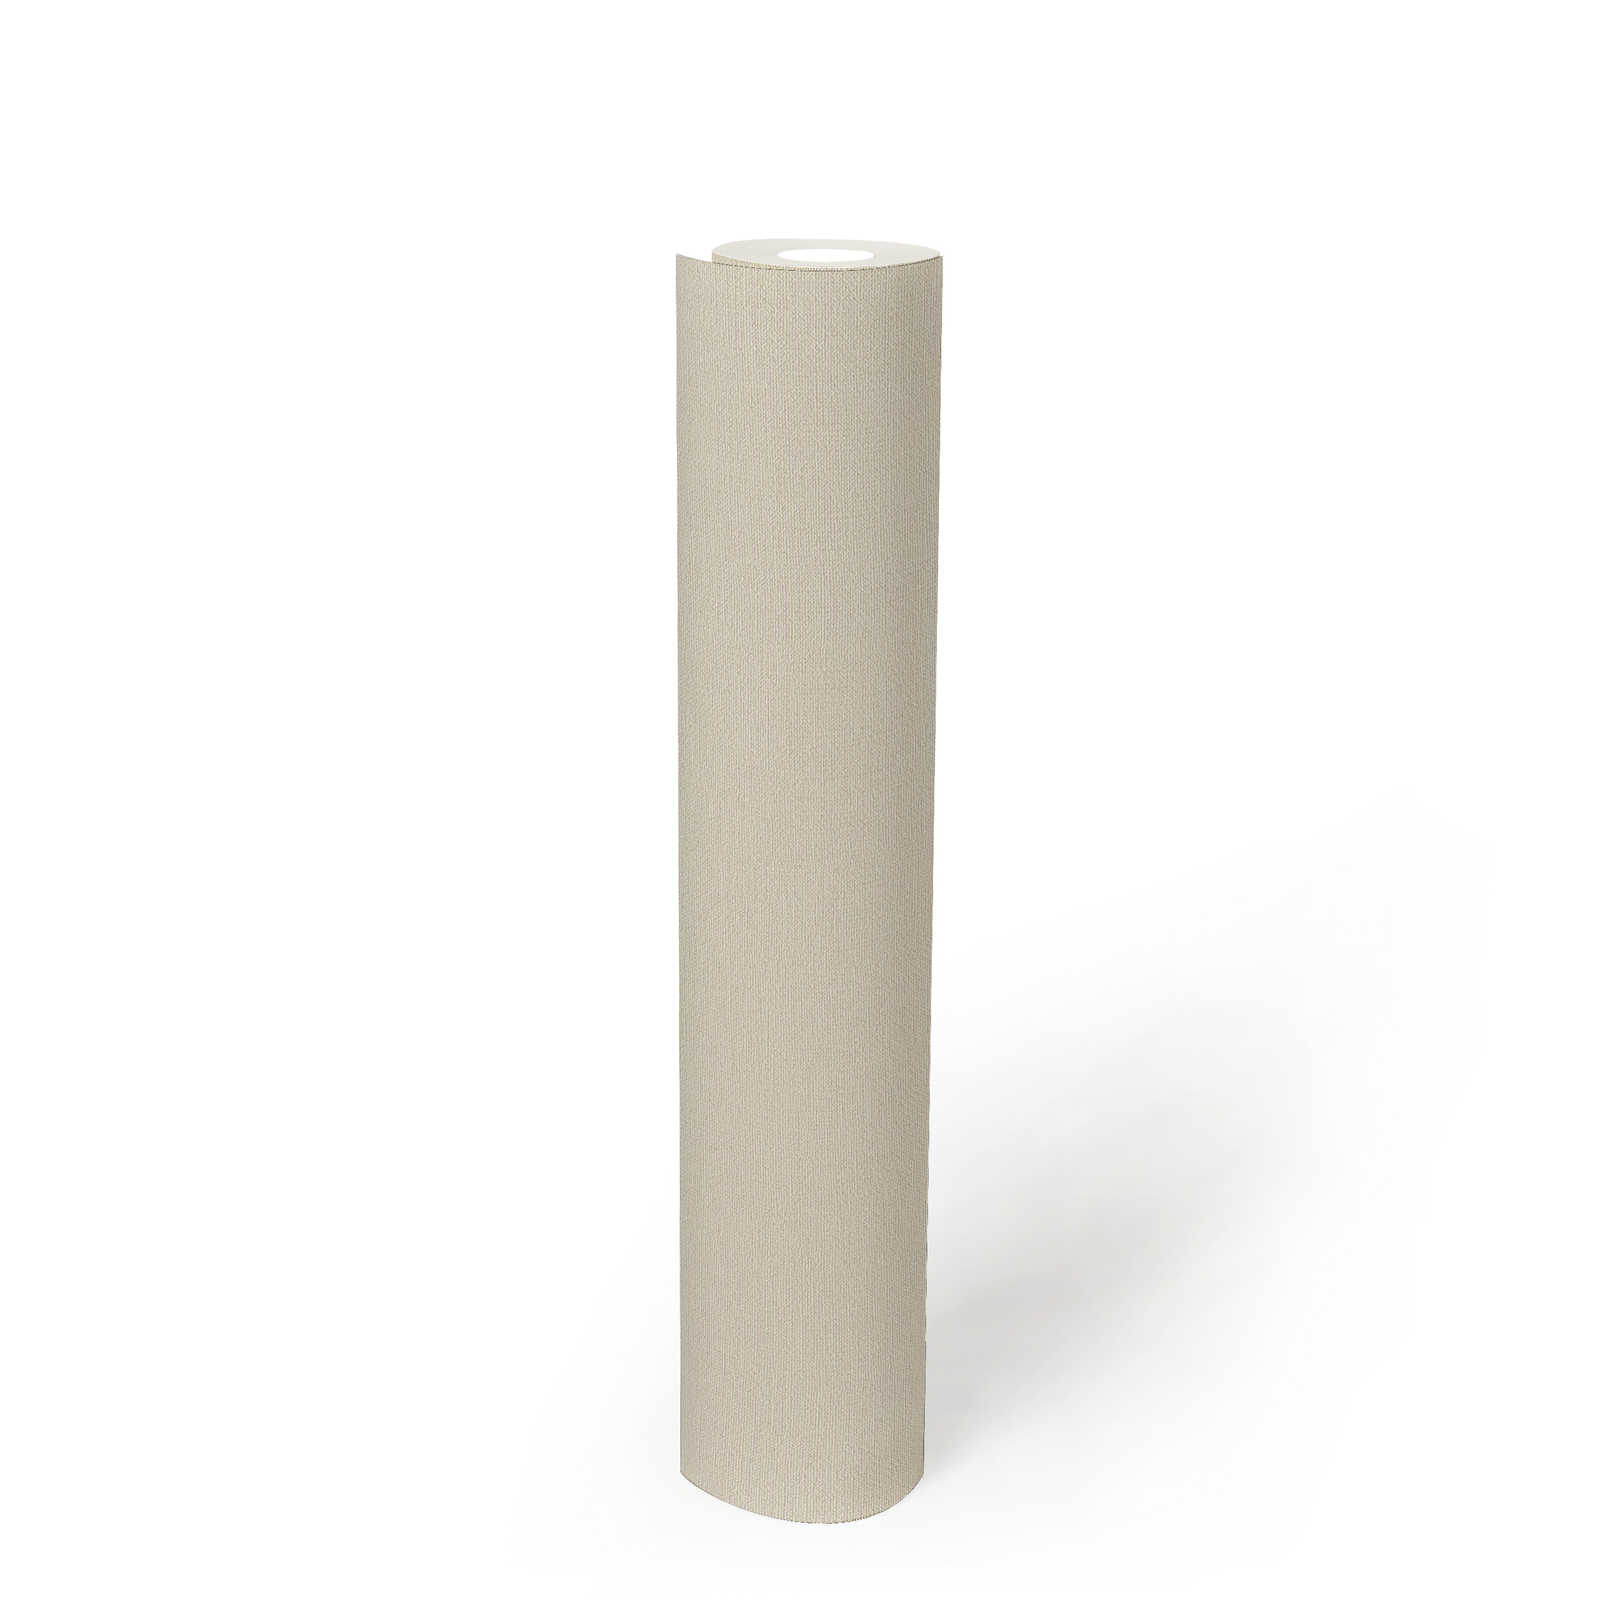             PVC-freie Unitapete mit Leinenoptik – Beige, Weiß
        